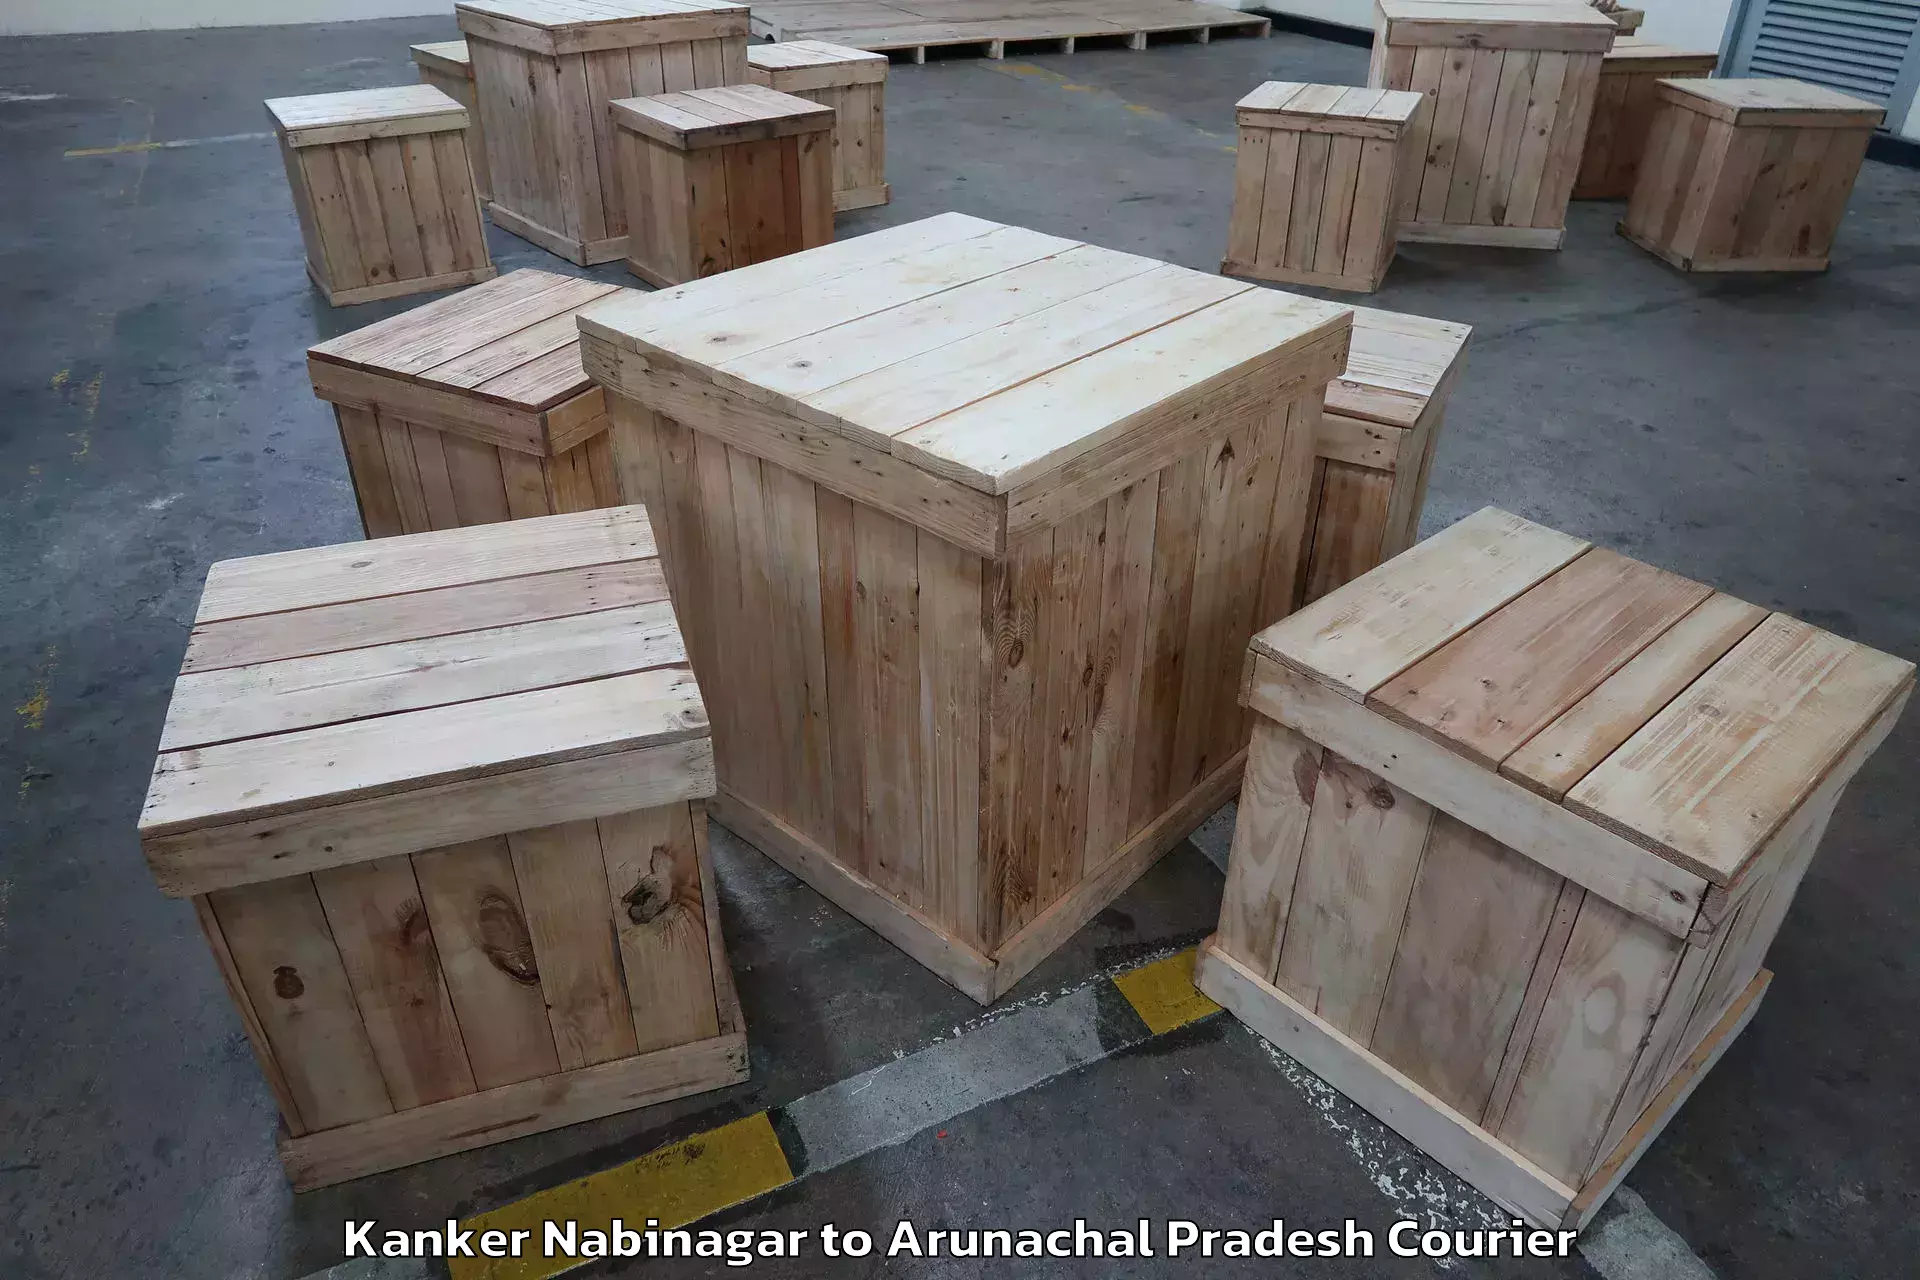 Skilled furniture transport in Kanker Nabinagar to Arunachal Pradesh